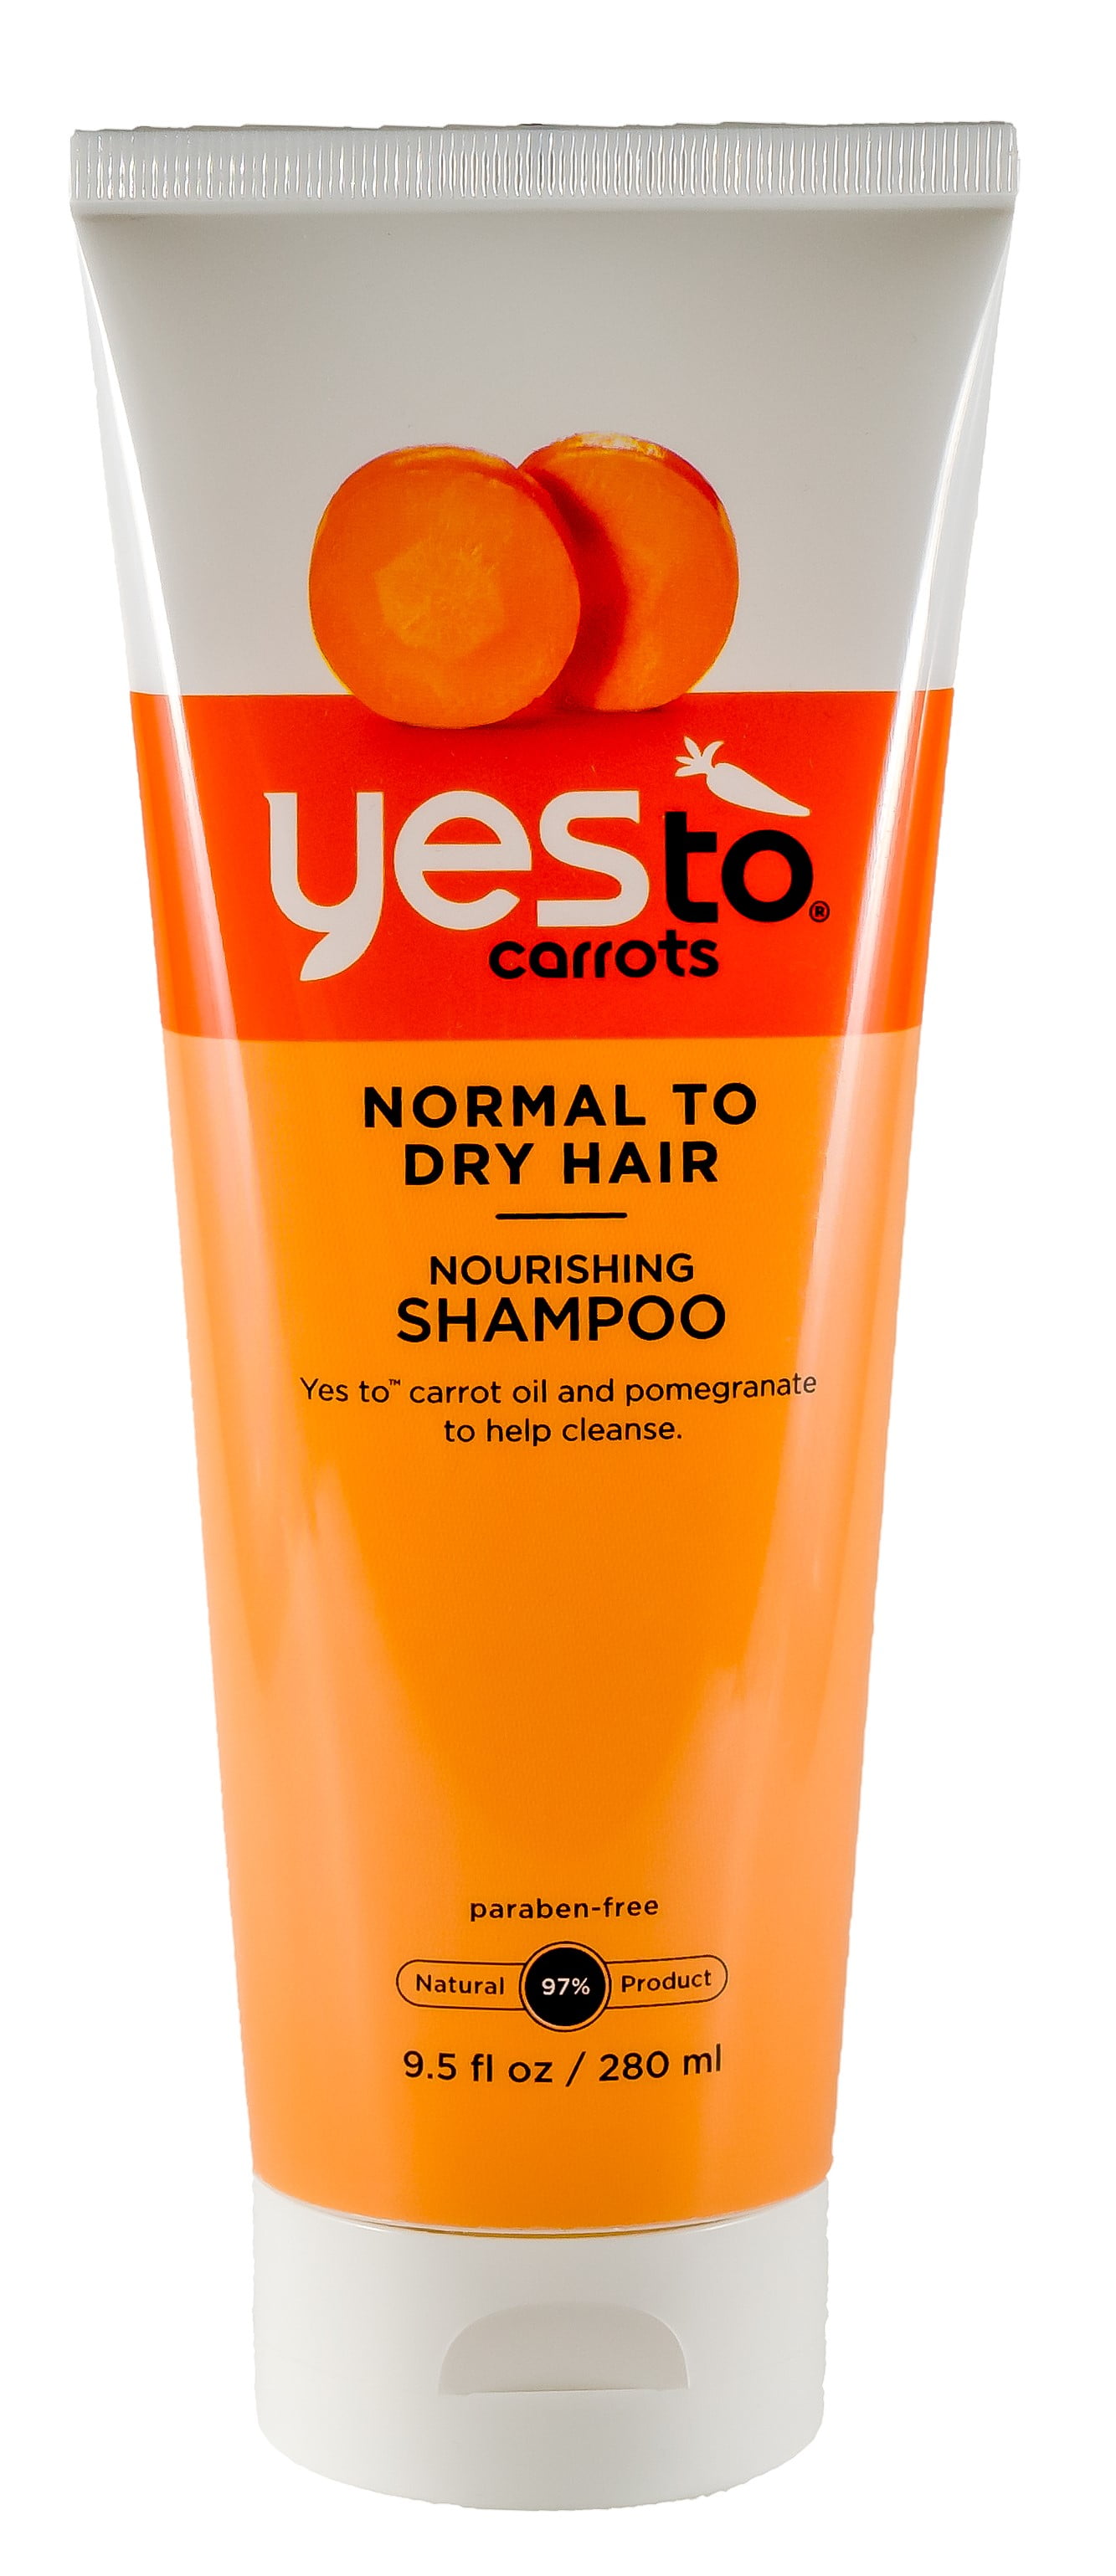 szampon yes to carrots nourishing shampoo shampoo ceneo